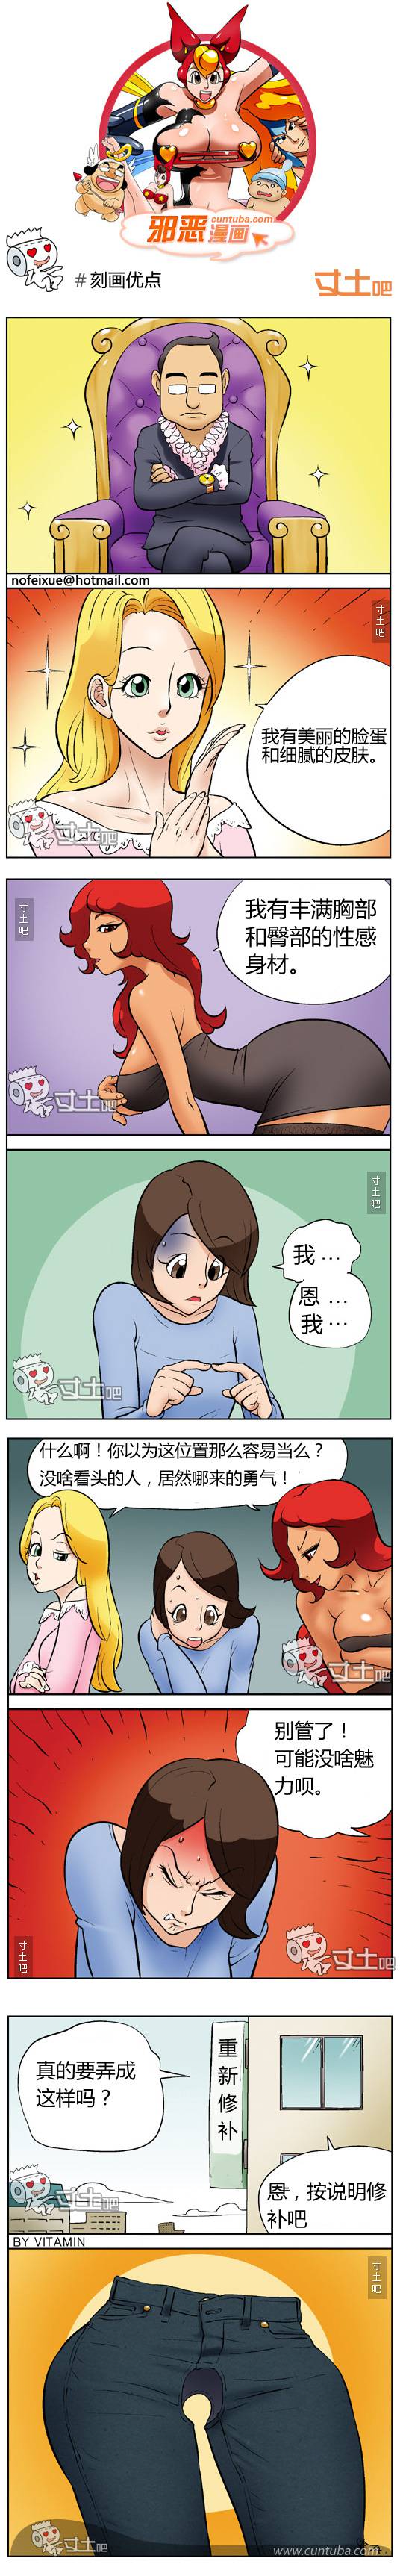 邪恶漫画爆笑囧图第177刊：魅力无可抵挡